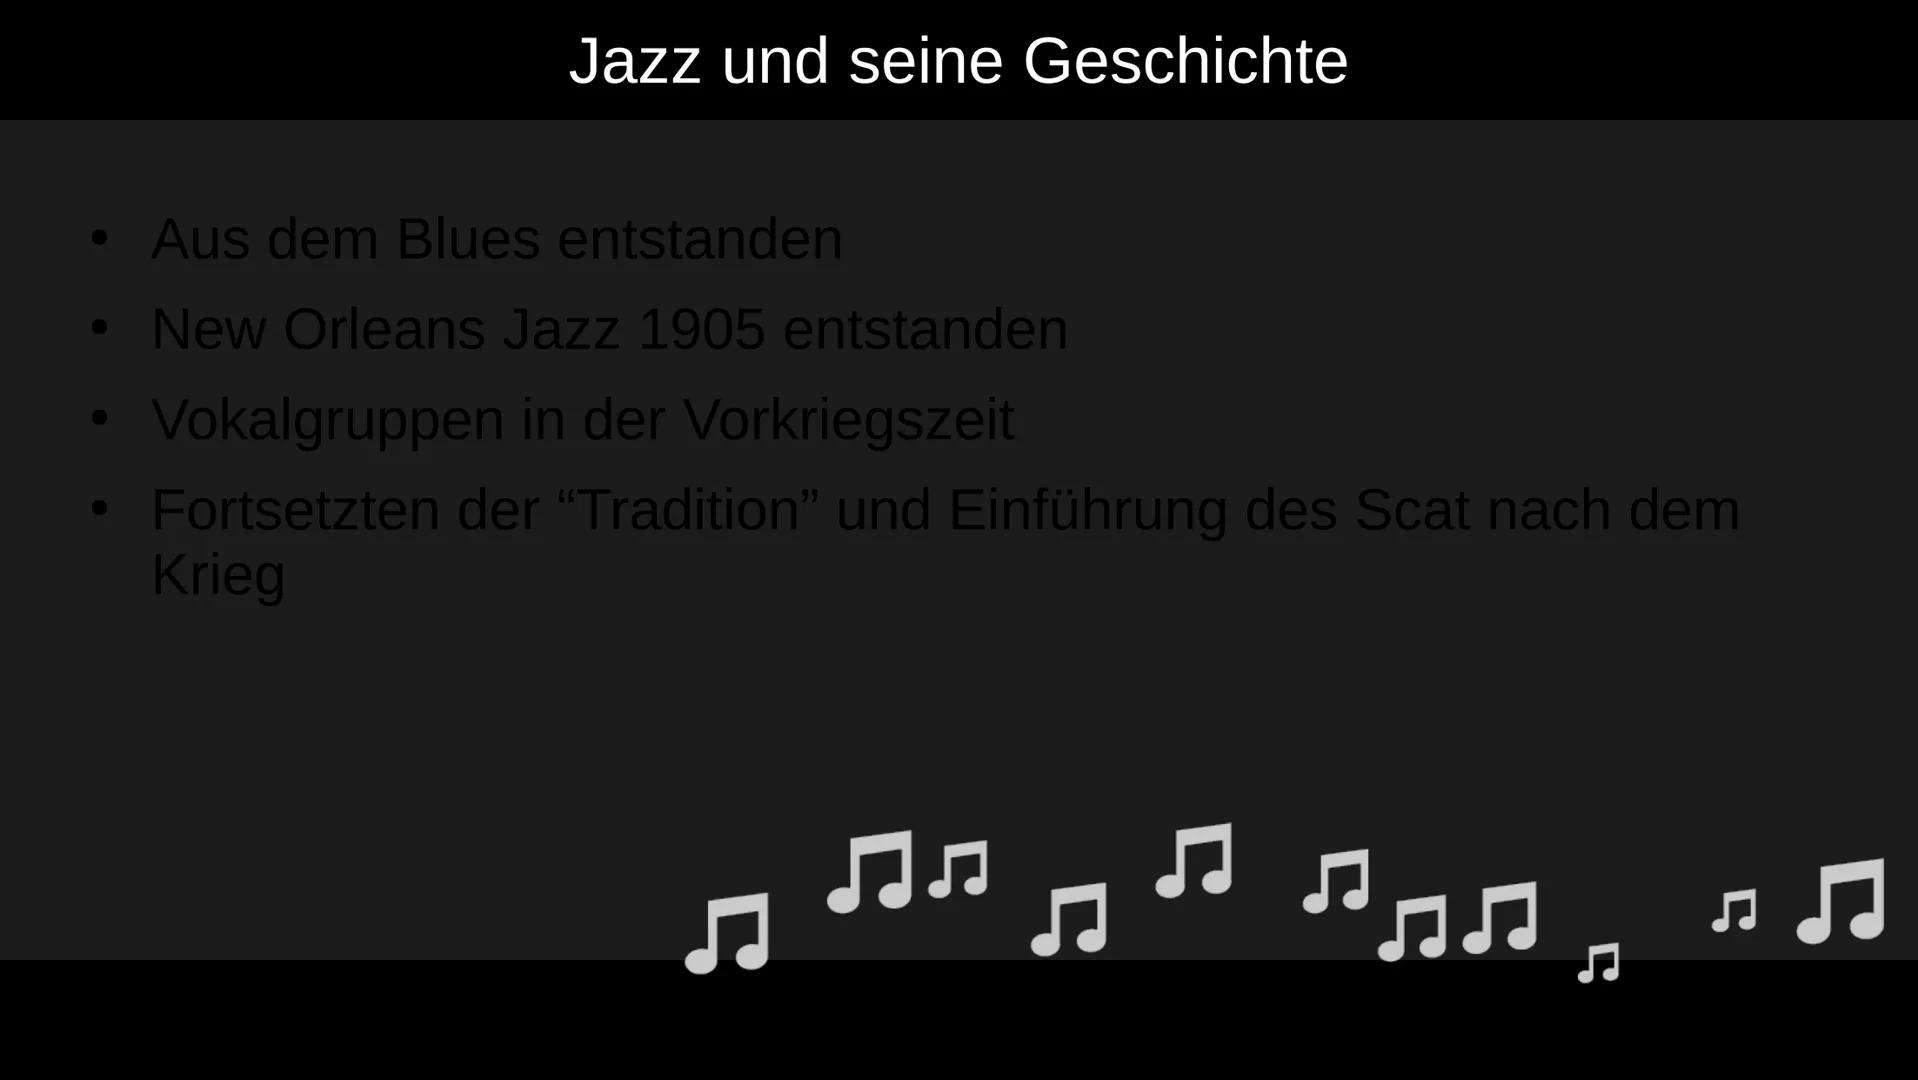 Stimmen im Jazz
Was ist daran besonders?
||
1 Grundsätzliche Merkmale
●
Stimmen werden wie Instrumente behandelt
• Viele Sänger*Innen haben 